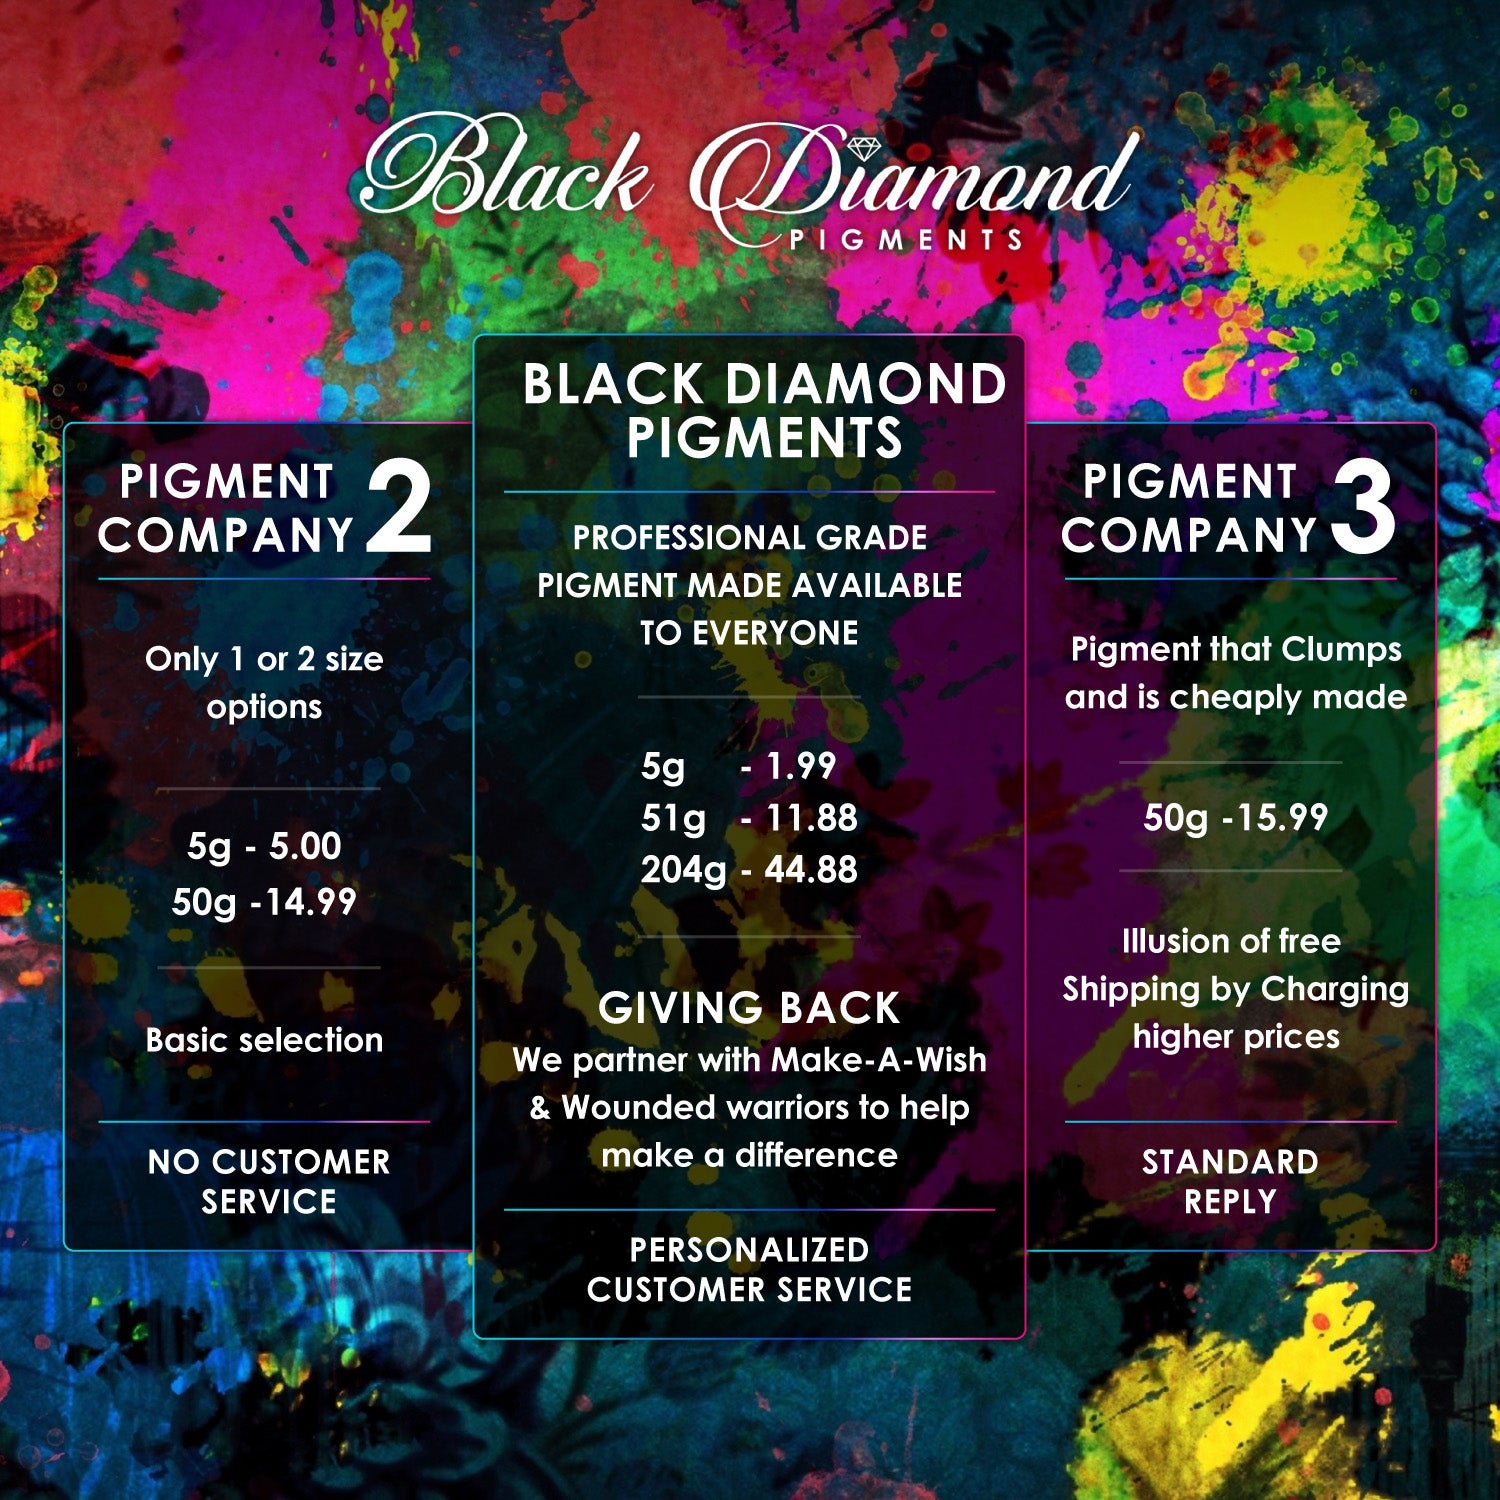 "BURPLE" Black Diamond Pigments